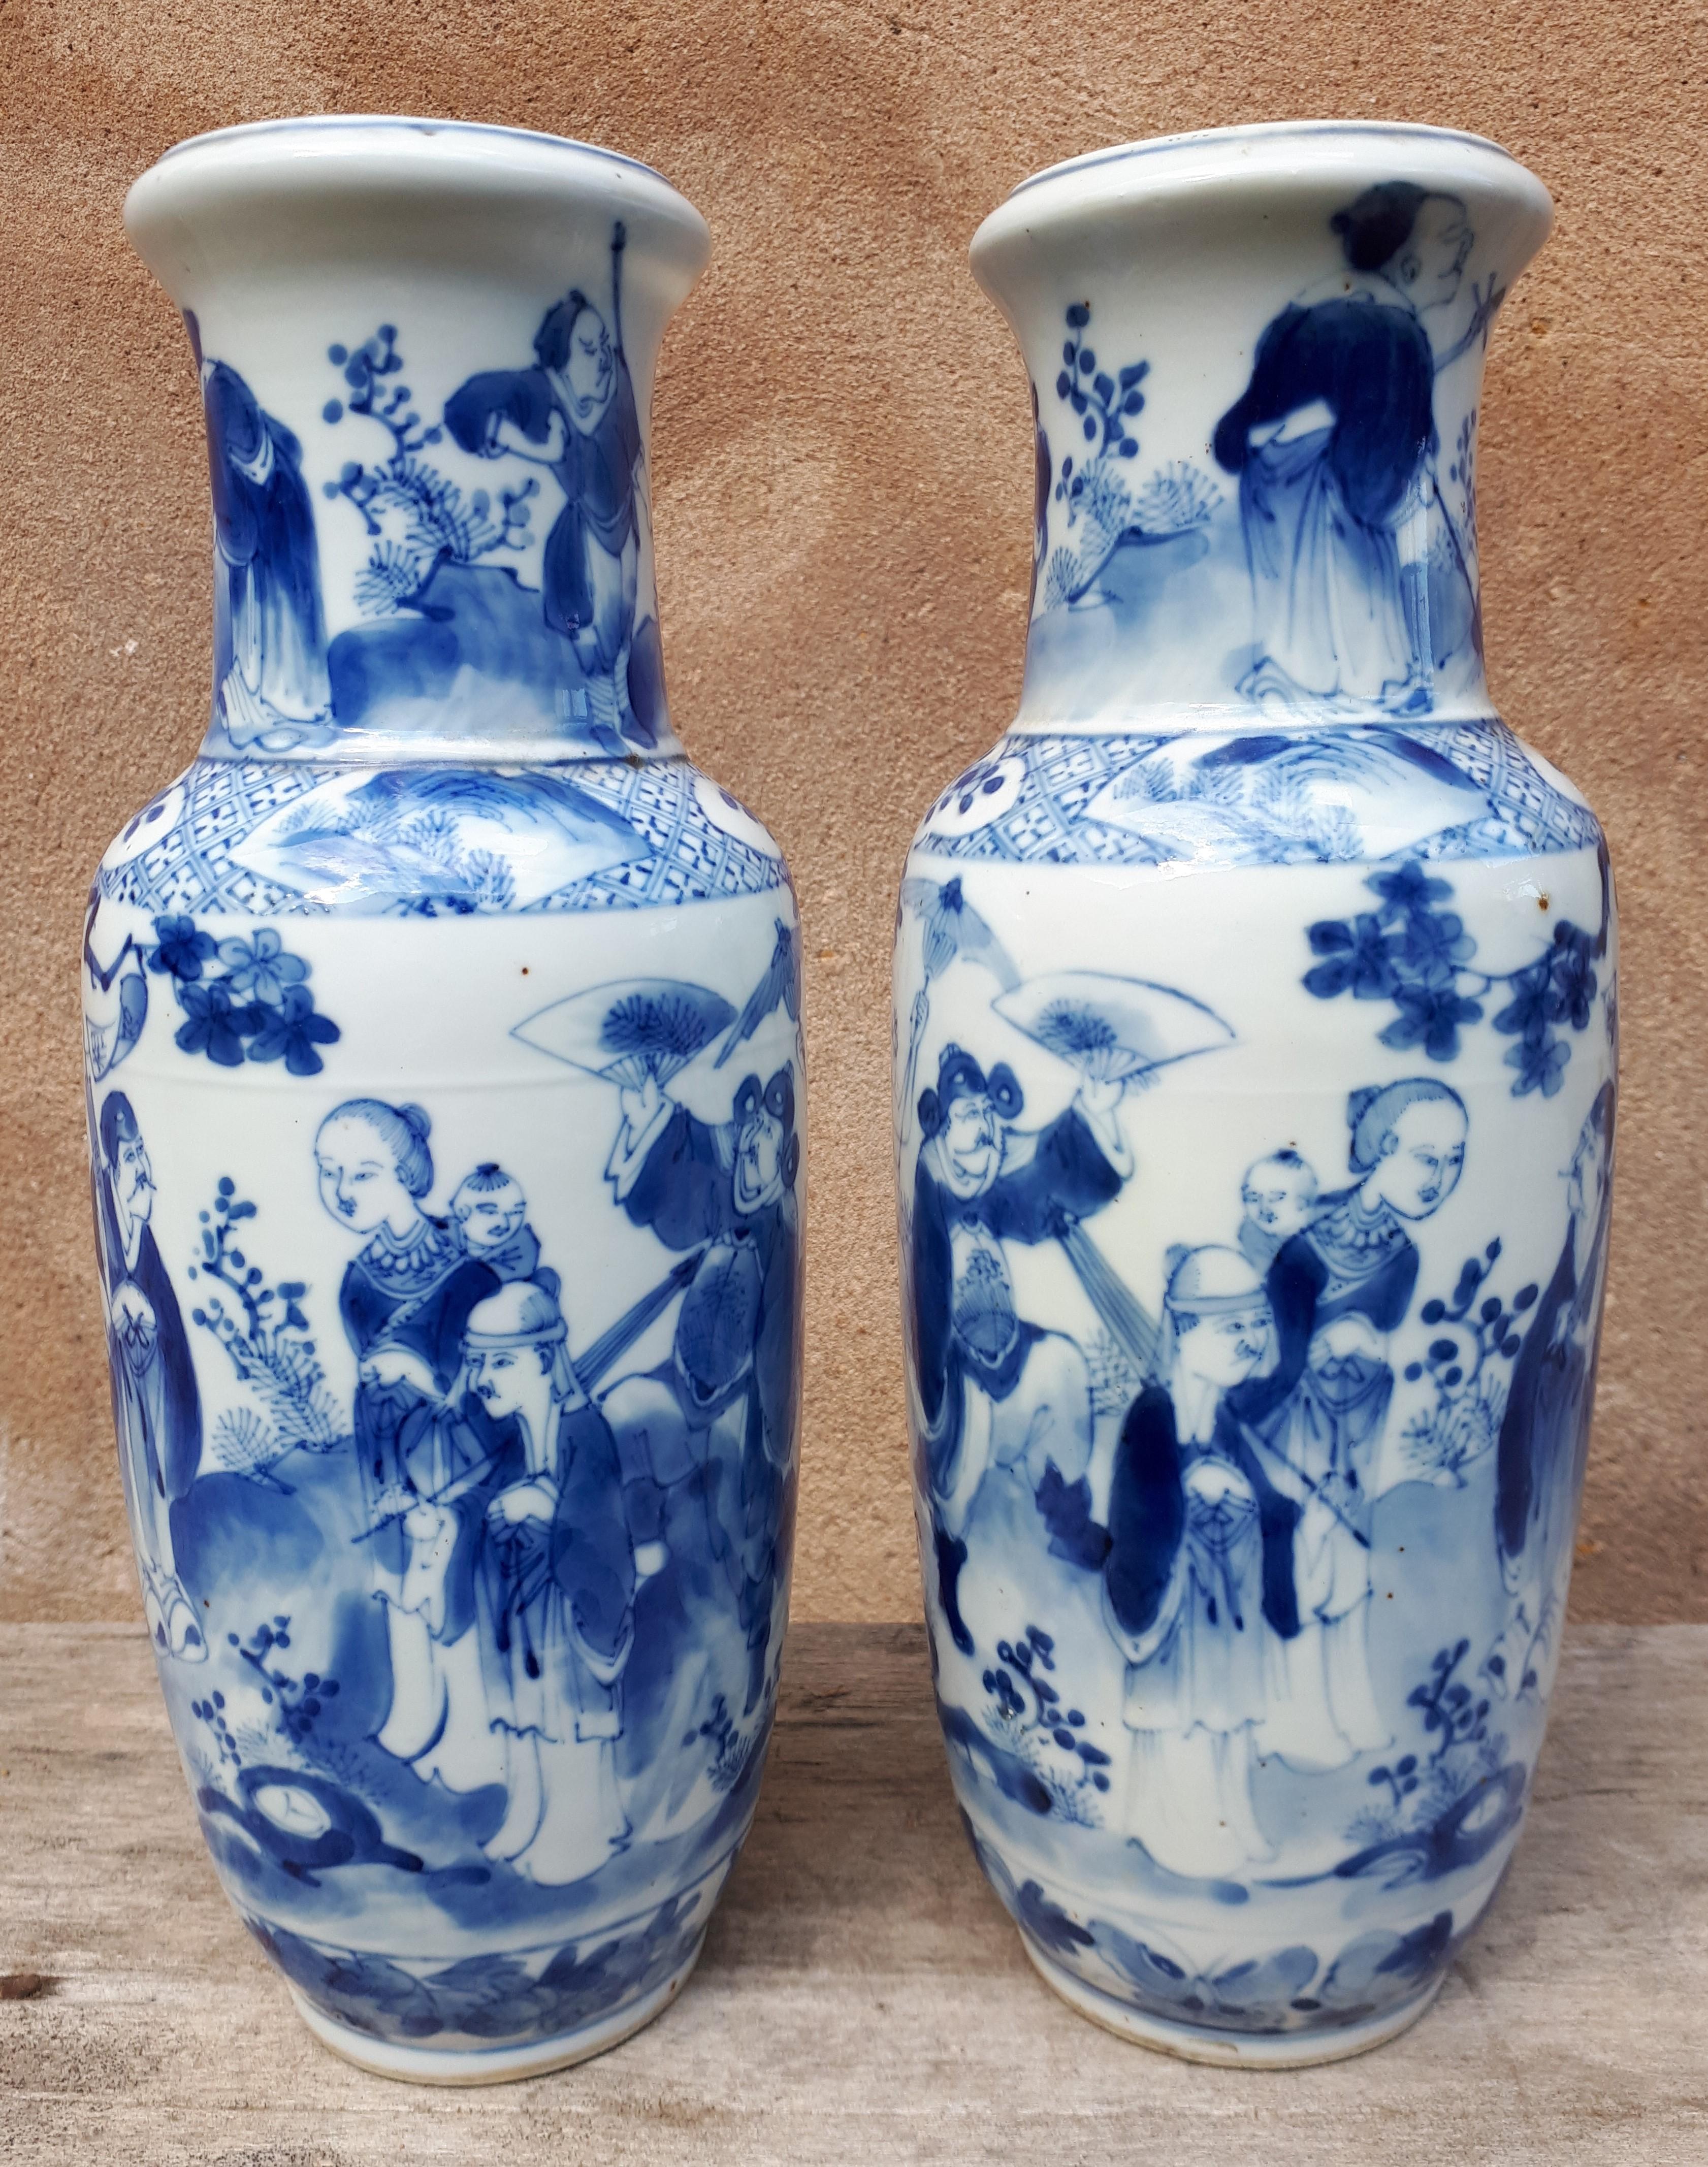 Paire de vases en porcelaine à décor miroir de personnages dans un jardin.
Très bon état.
Marque Xuande sous chaque base.
Chine du XIXe siècle.